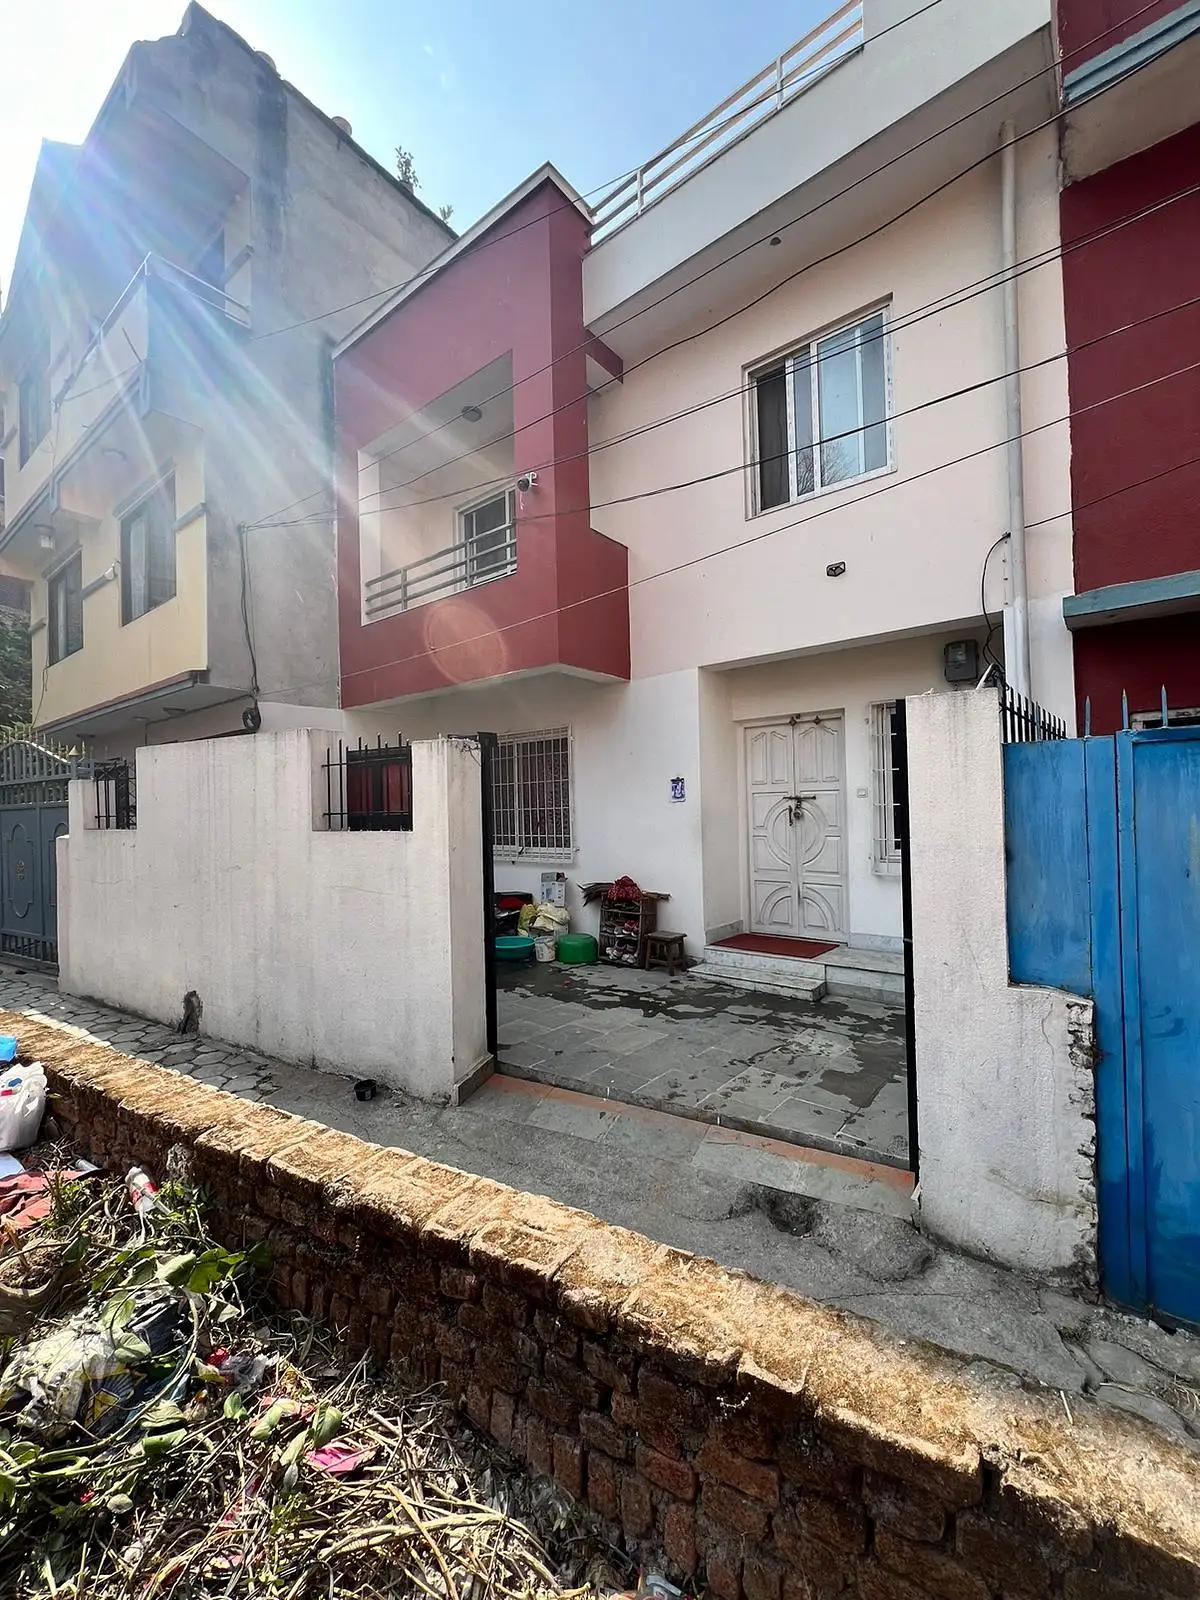  Residential House for Sale in Thamel, Kathmandu-image-1